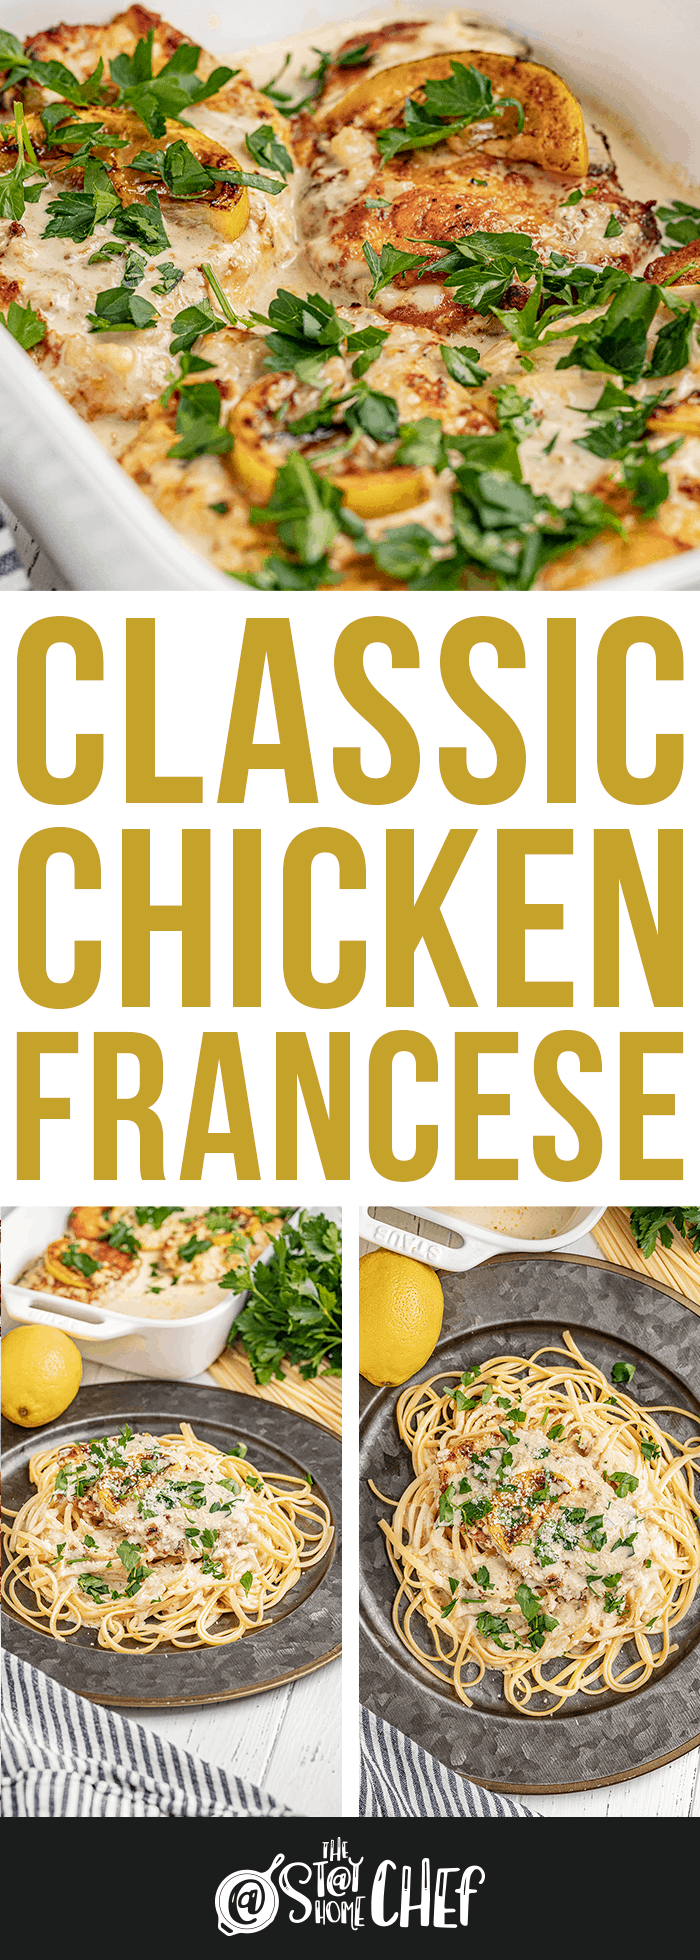 Chicken Francese